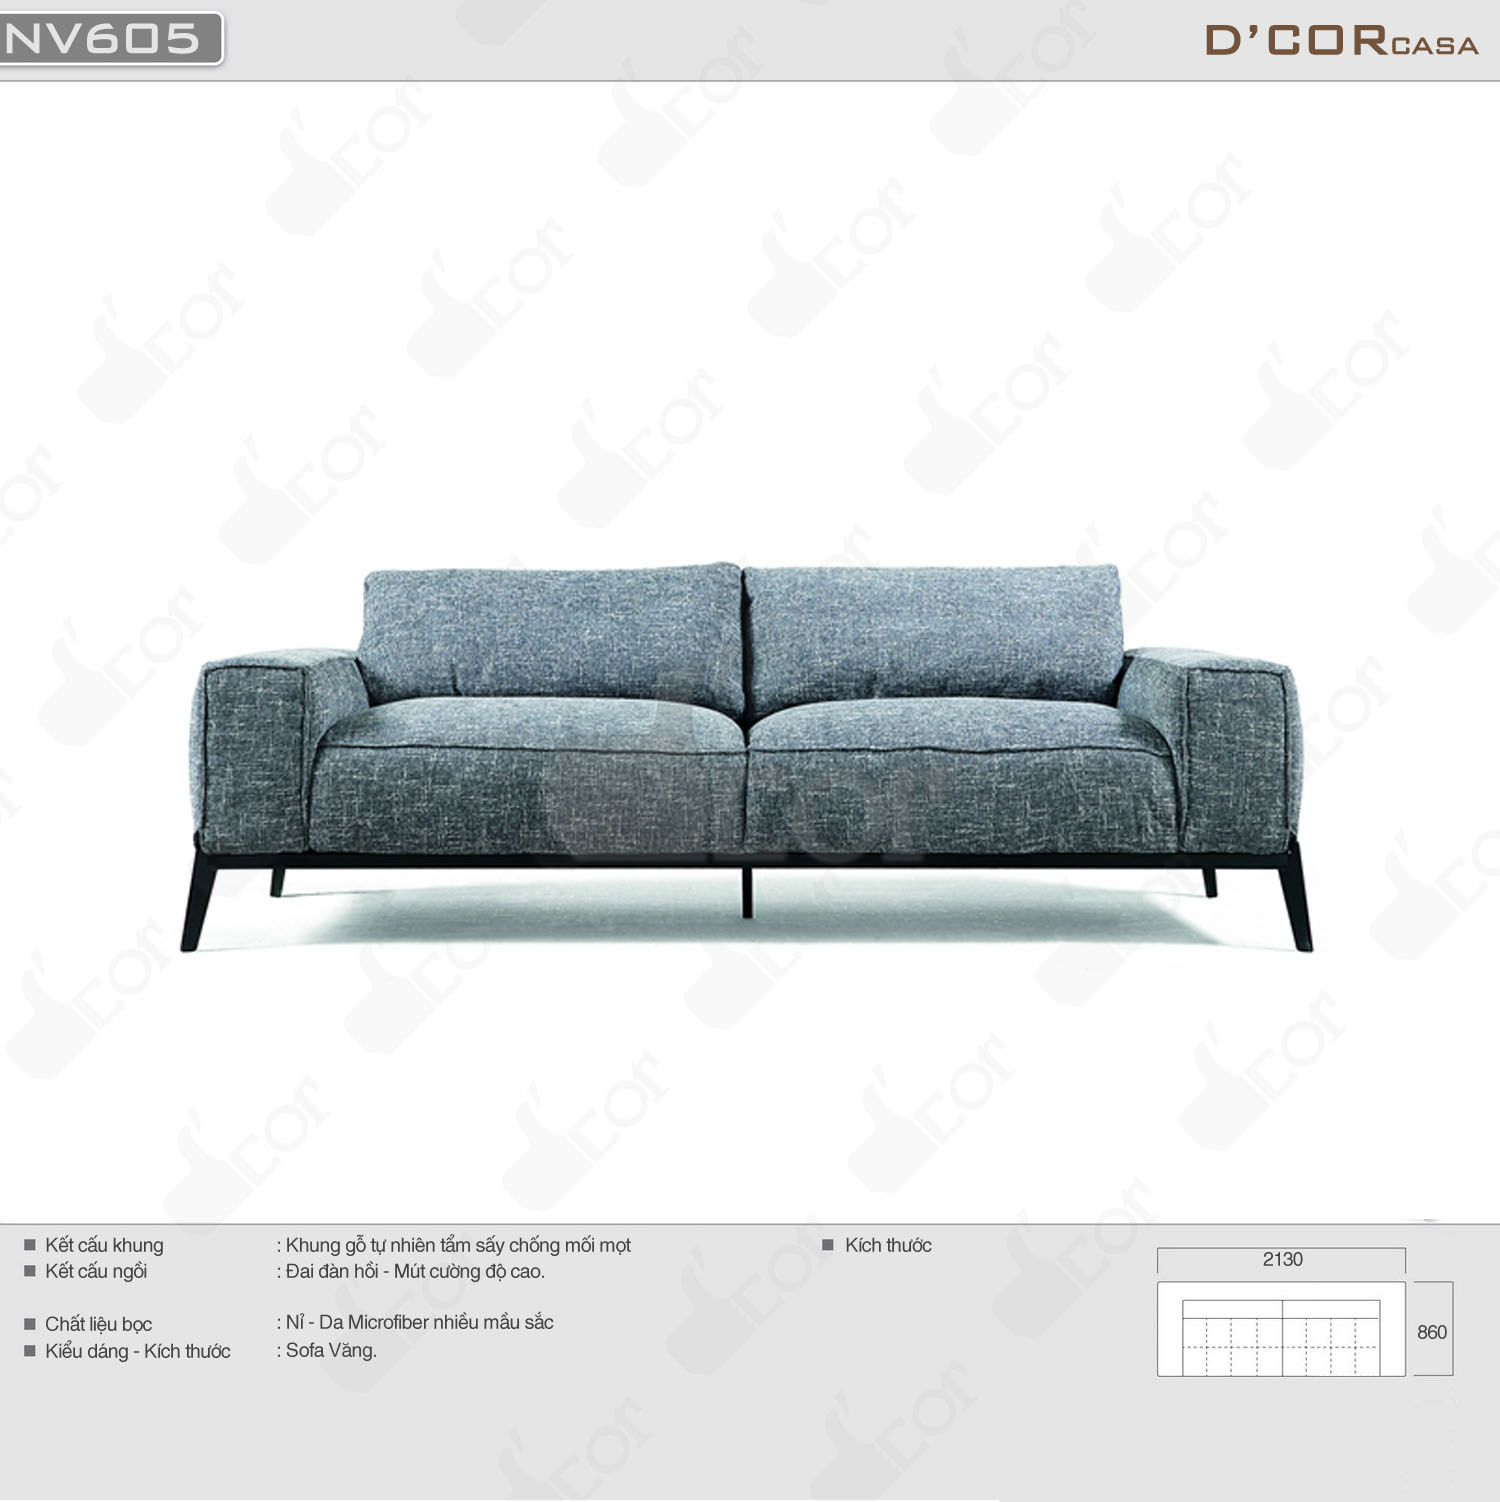 Sofa văng đẹp, hiện đại, giá rẻ : NV605 cho phòng khách nhỏ hẹp